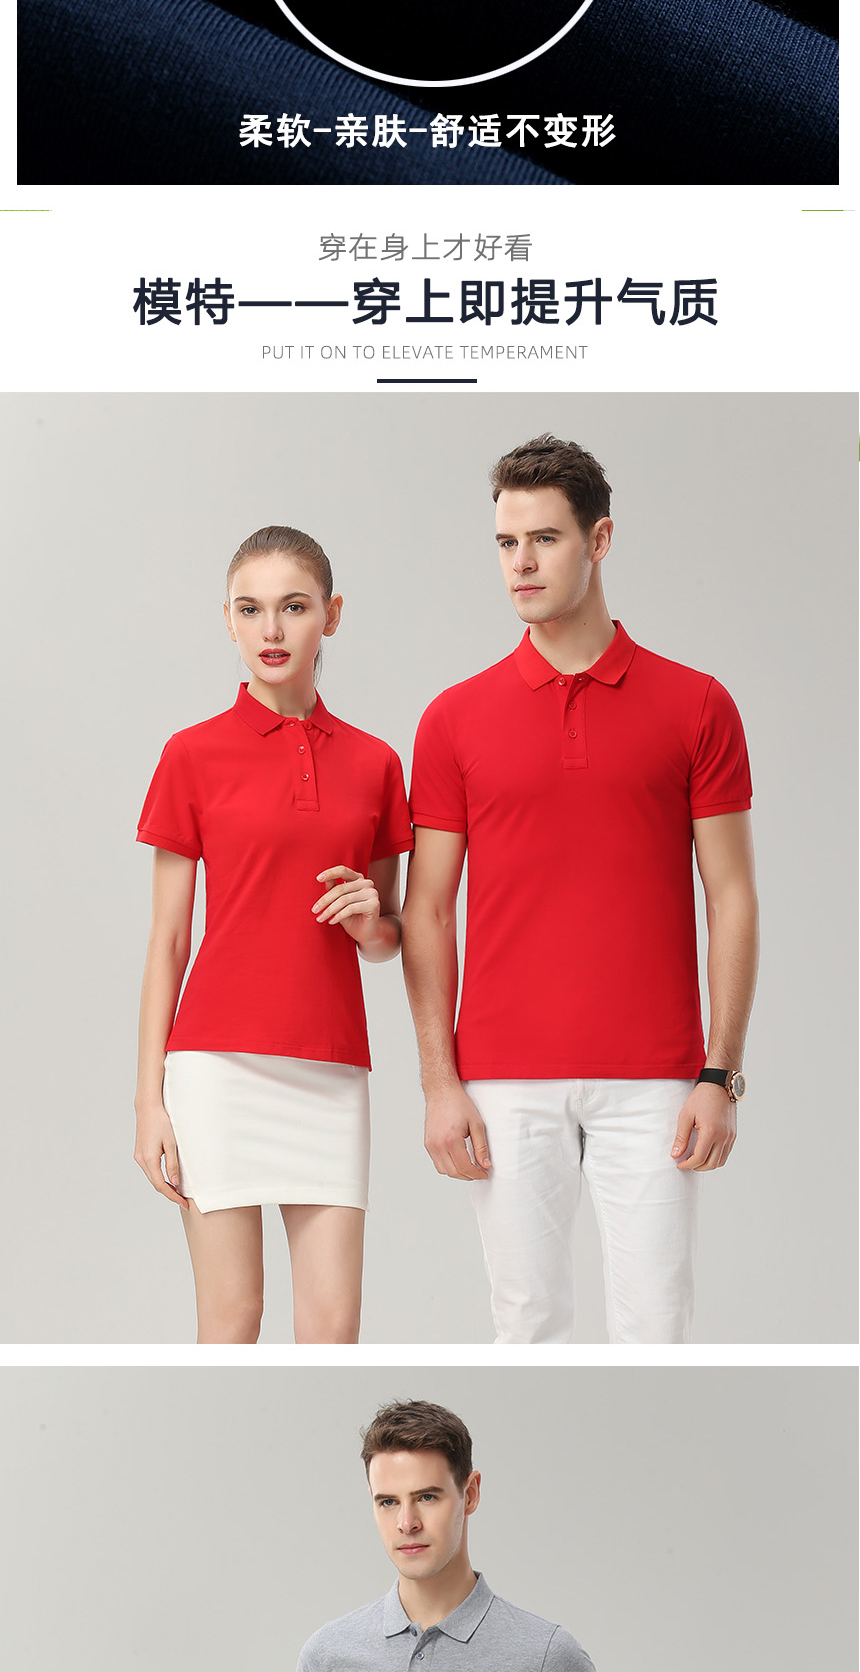 纯棉POLO衫同款不同颜色款式展示，纯棉POLO衫精选优质面料